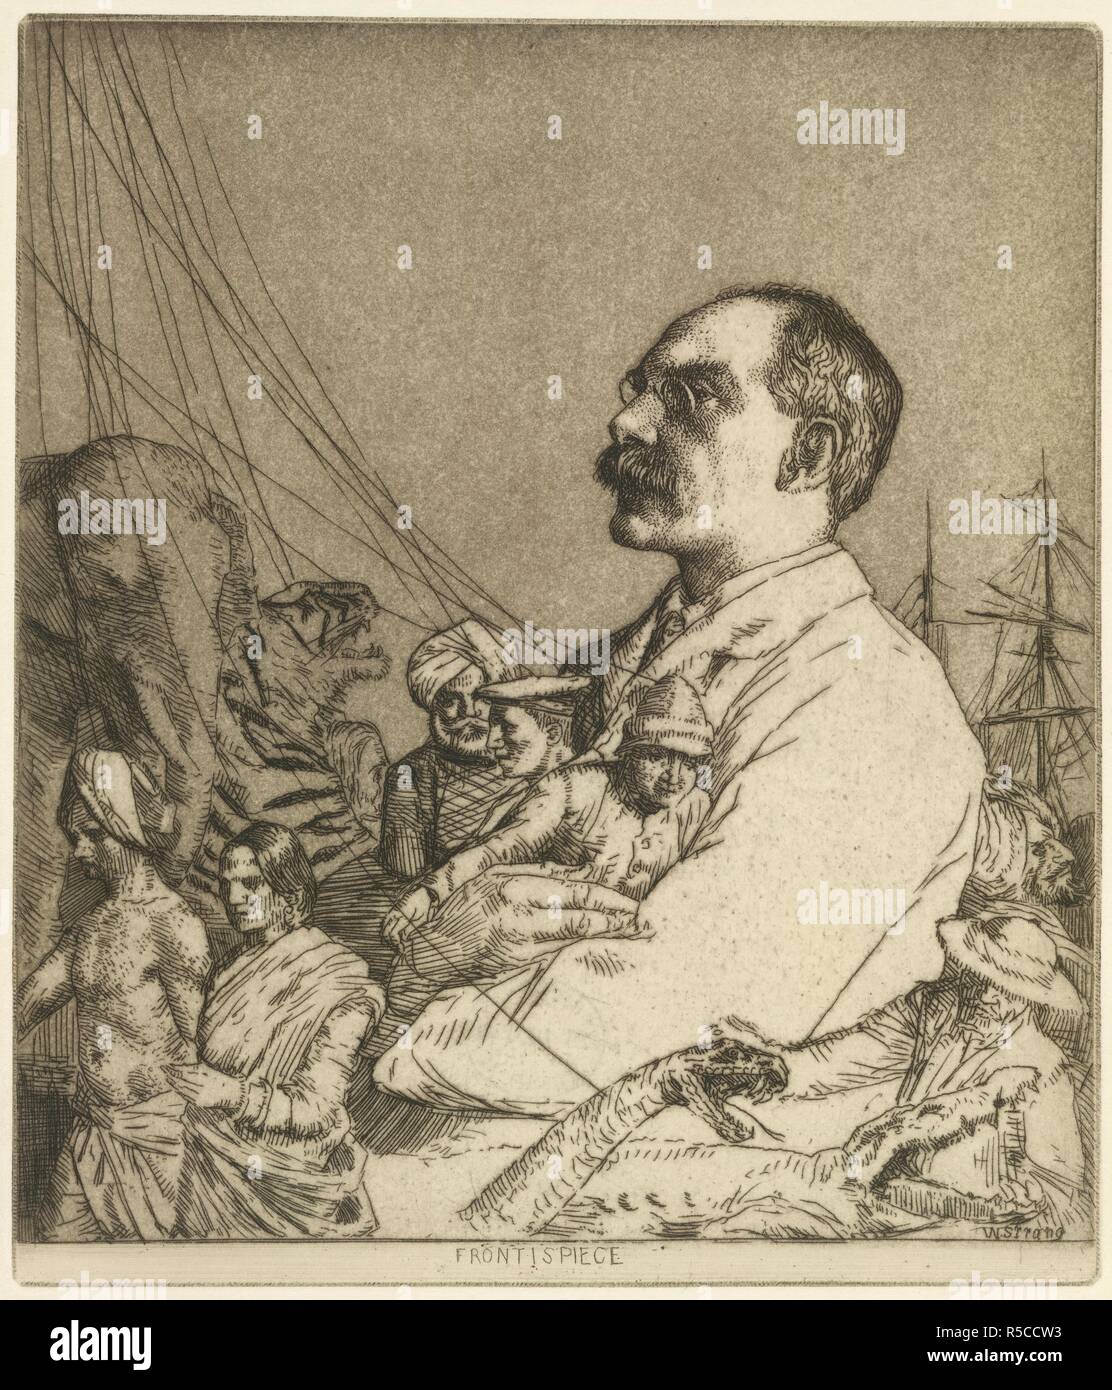 Un retrato de Rudyard Kipling con personajes de sus historias. Una serie de  34 aguafuertes ... ilustrando los temas de los escritos de Rudyard Kipling.  Macmillan & Co.: Londres, 1901. Fuente: L.R.301.bb.6,